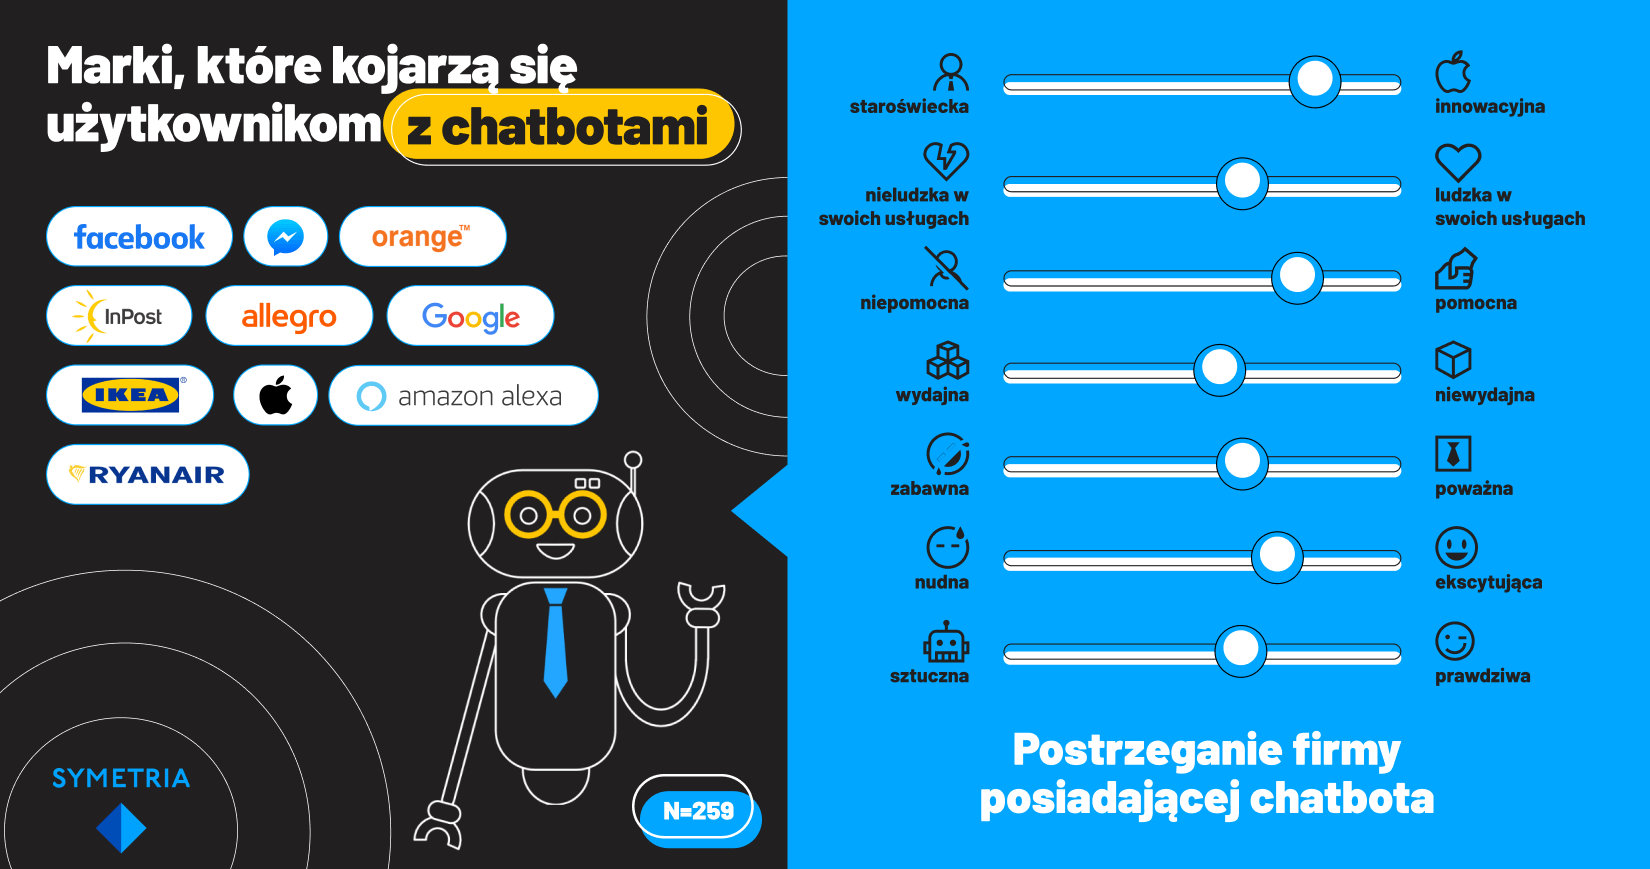 Marki, które kojarzą się użytkownikom z chatbotami (Polska 2020)